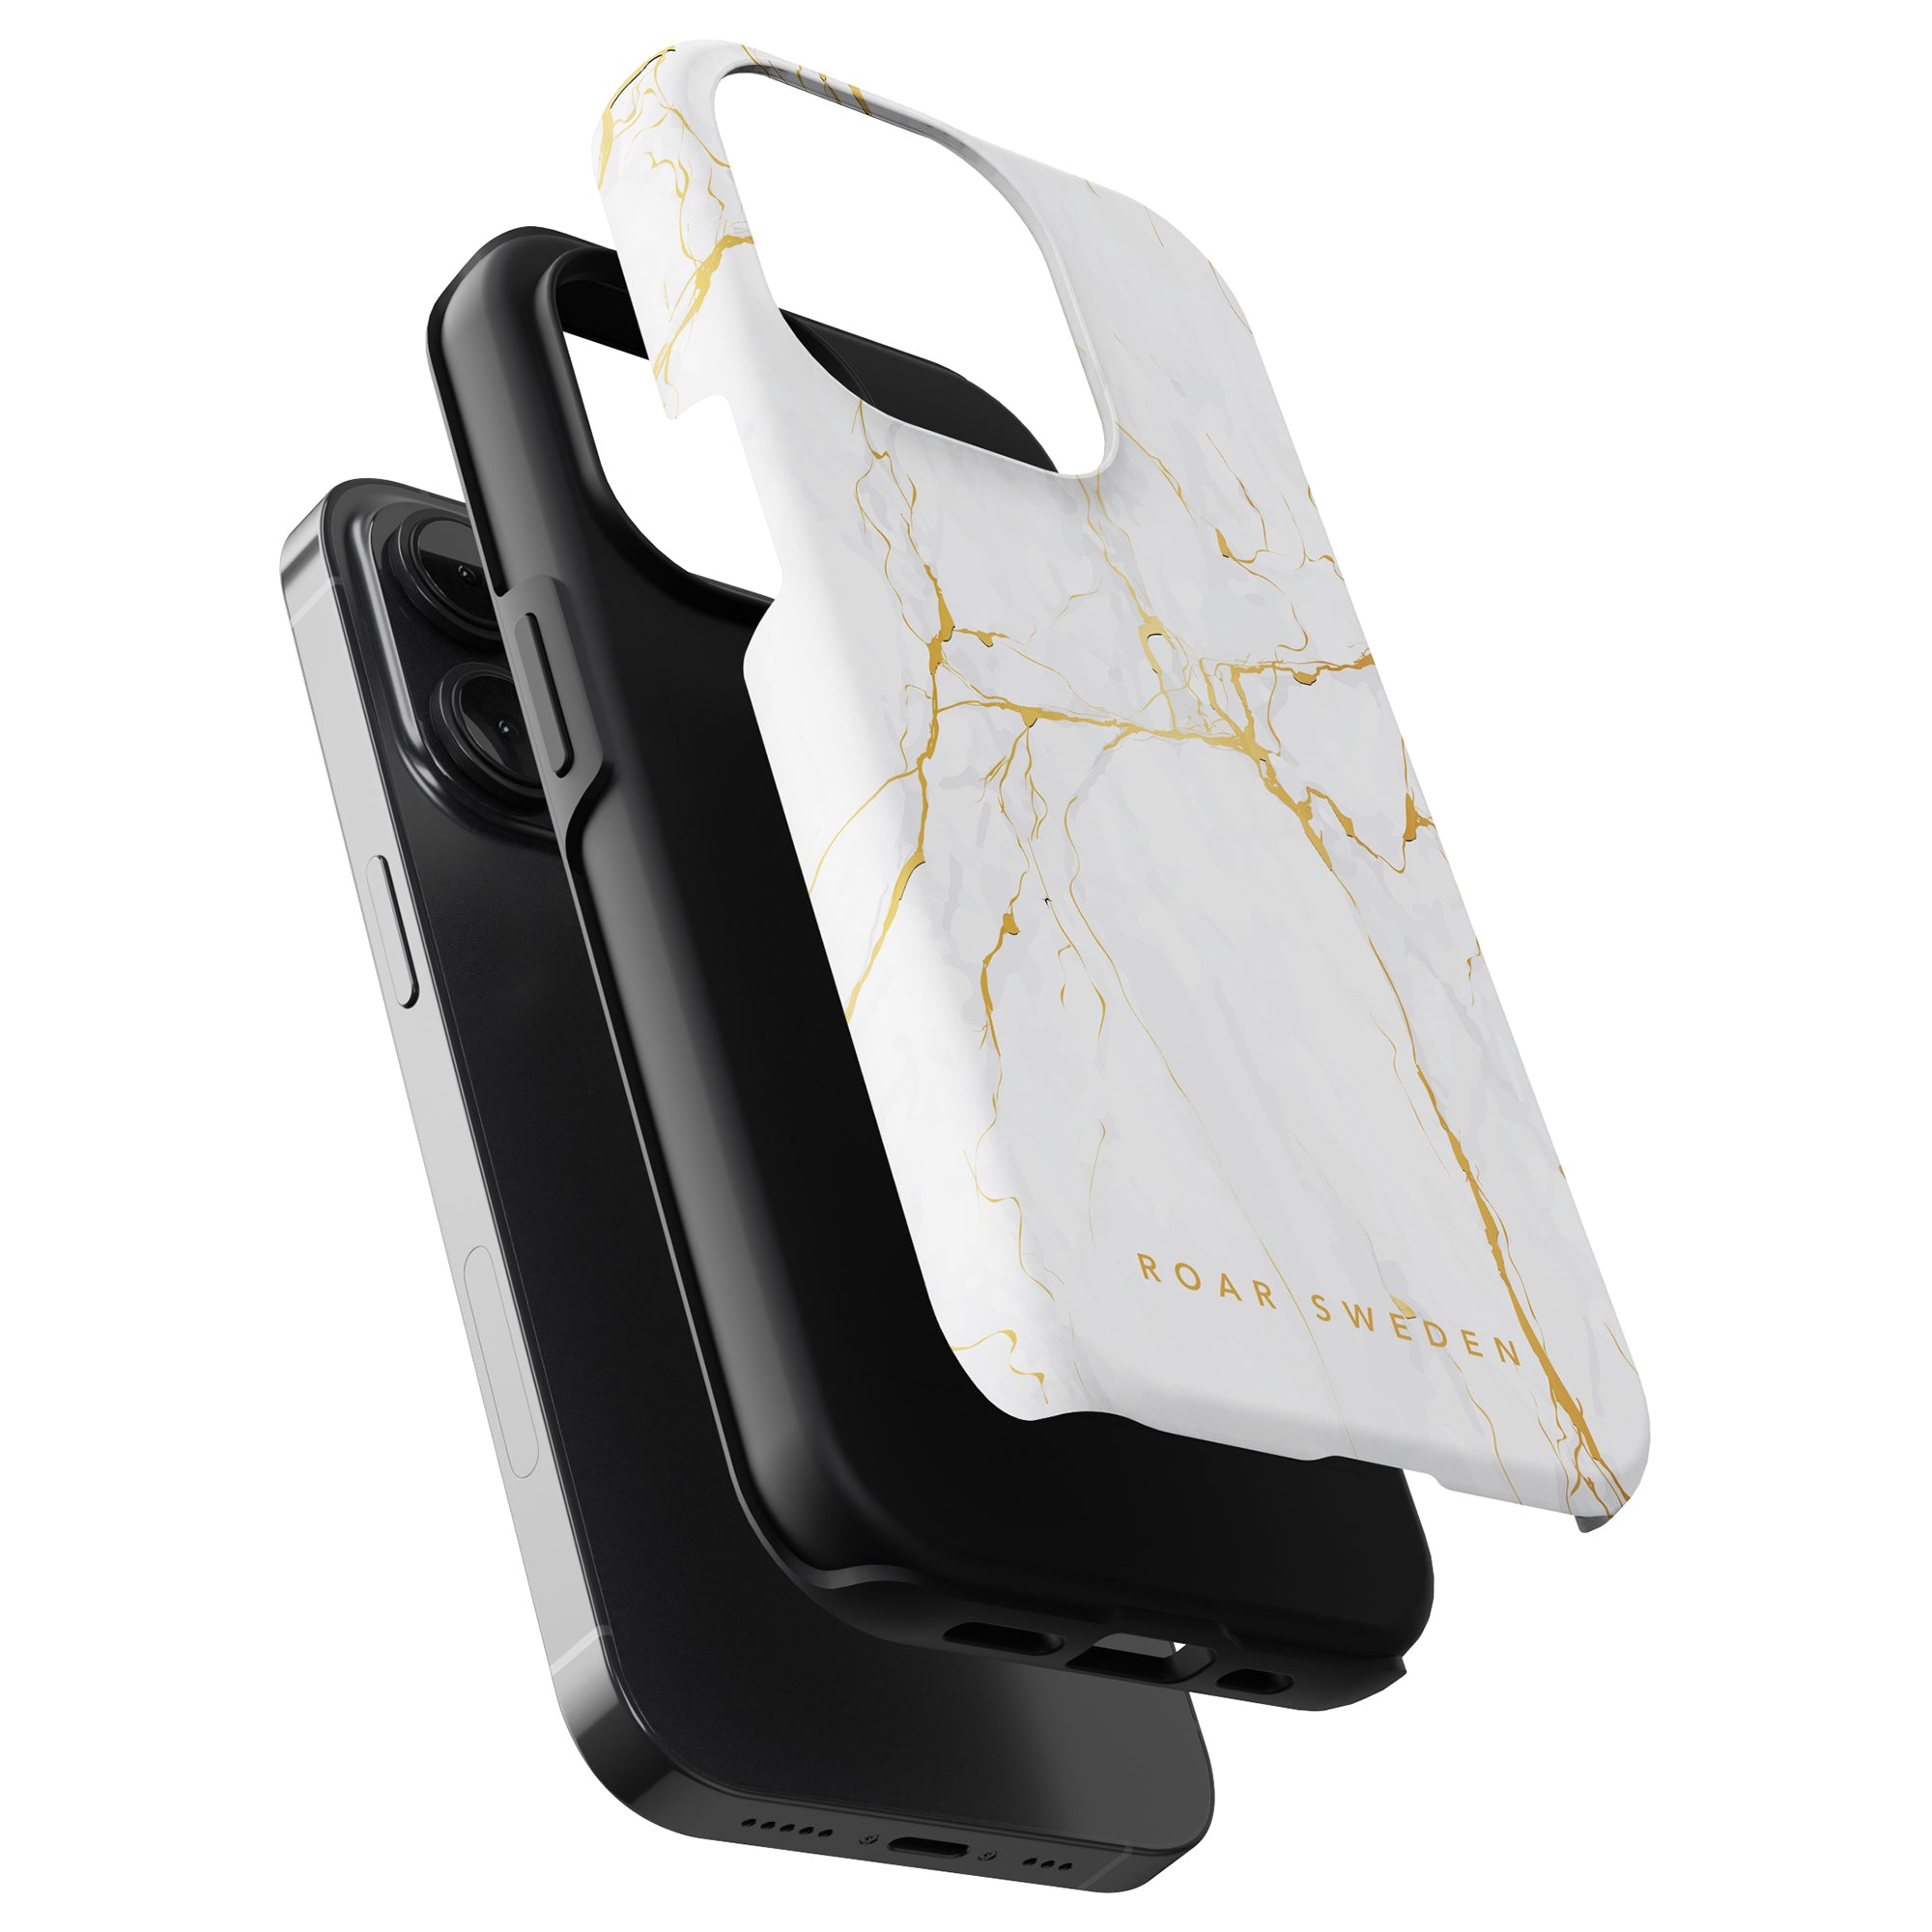 Detta Calacatta Gold - Tough Case är designat speciellt för iPhone 11 Pro.